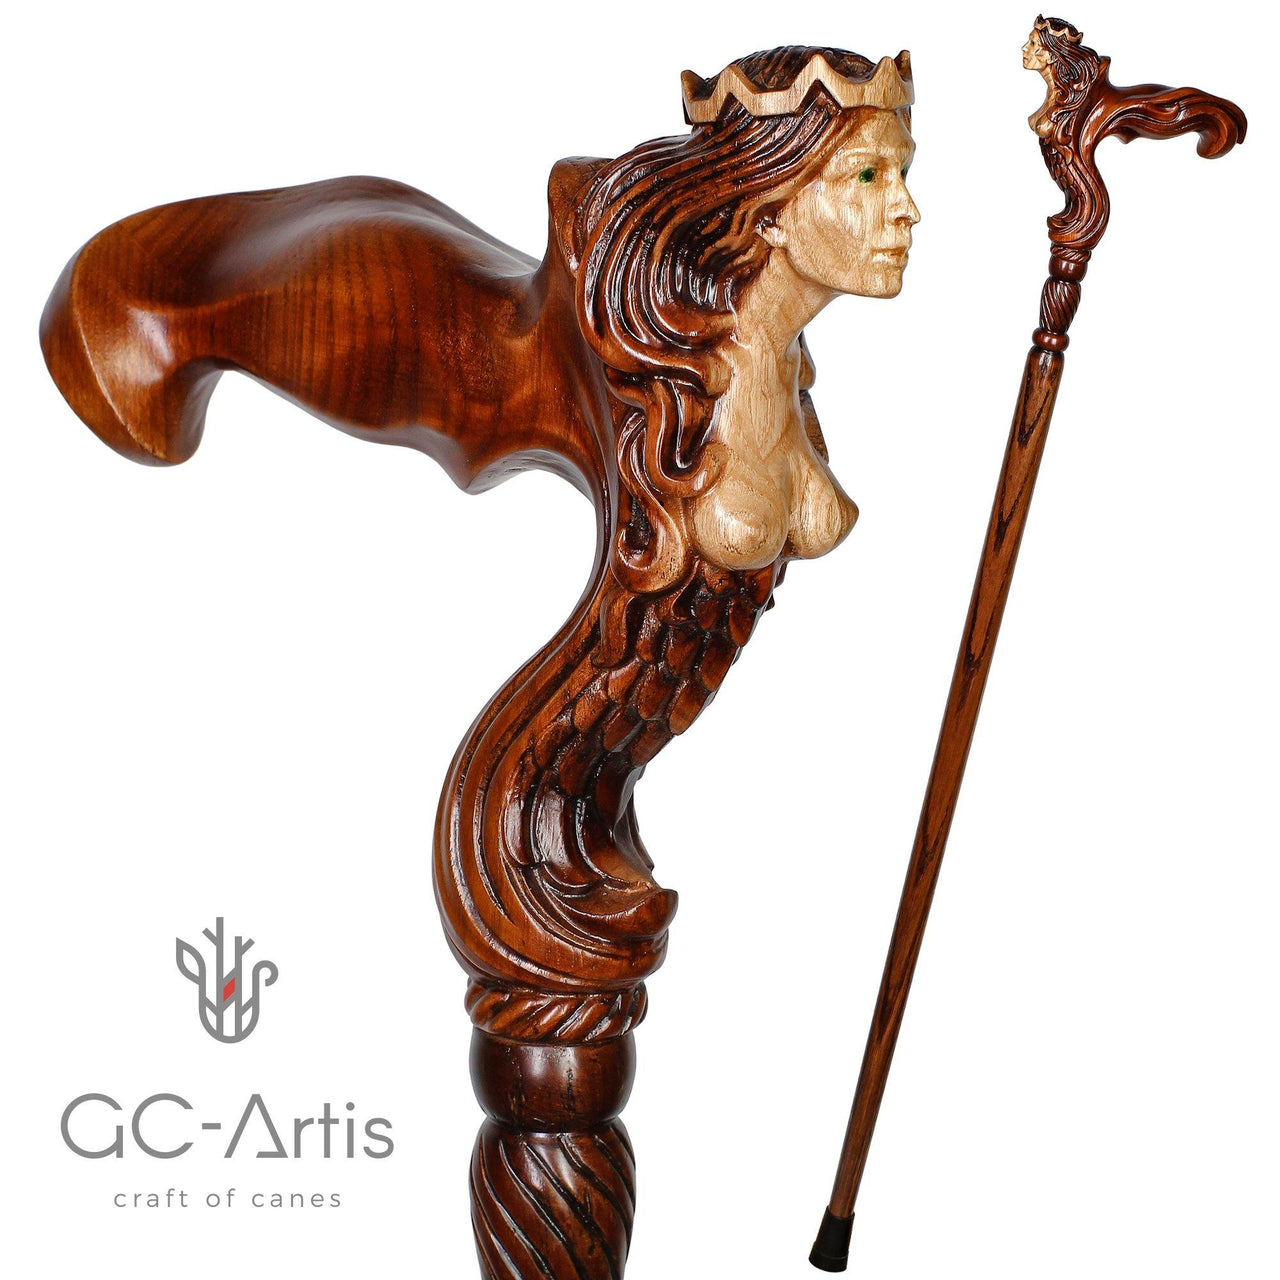 Ergonomic Palm Grip Handle Wooden Walking cane Fantasy Syren - GC-Artis Walking Sticks Canes